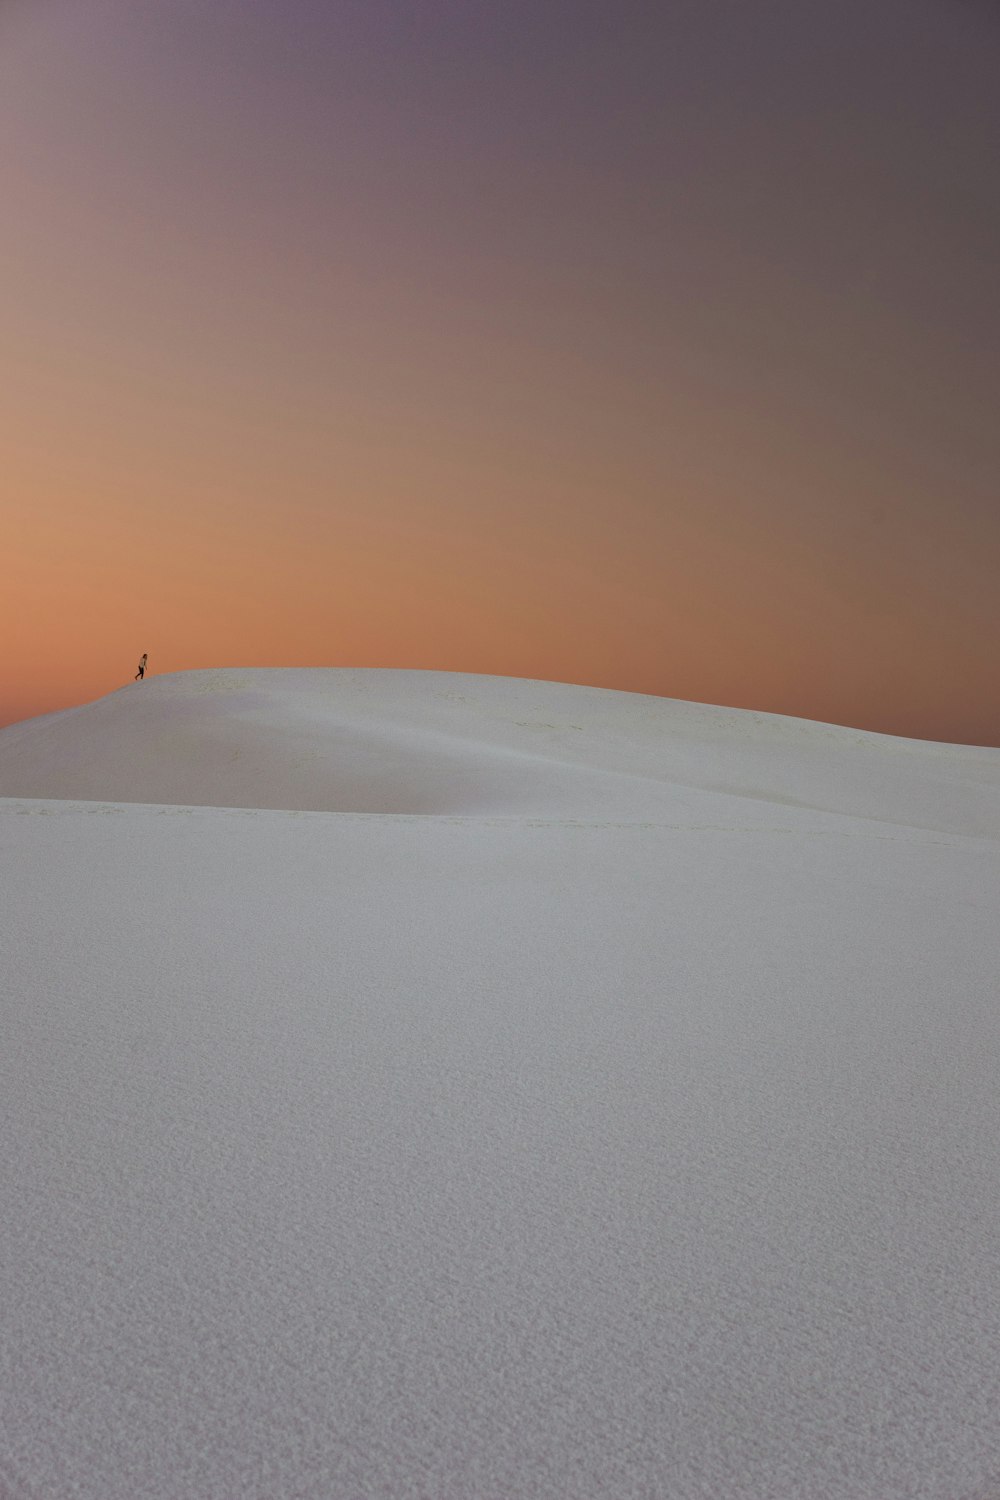 砂漠の砂丘を歩く人